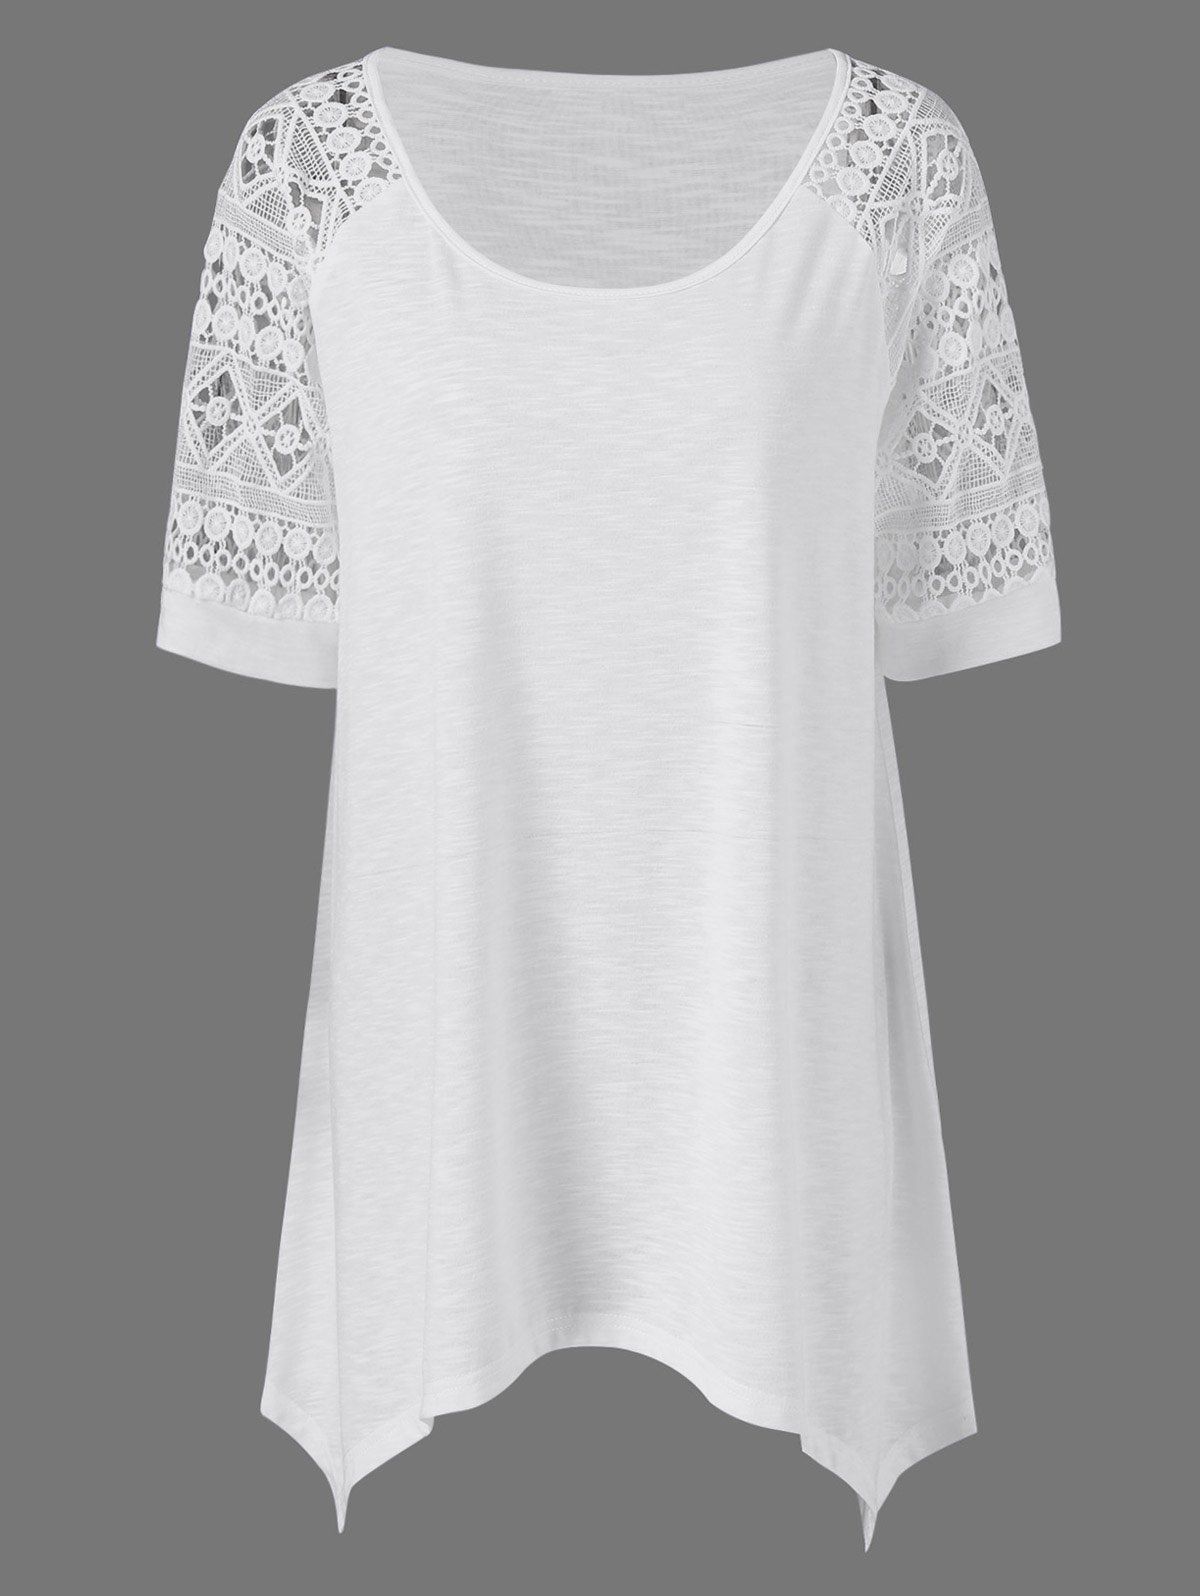 Plus Size Raglan Sleeve Crochet Trim Long T-Shirt - WHITE 2XL